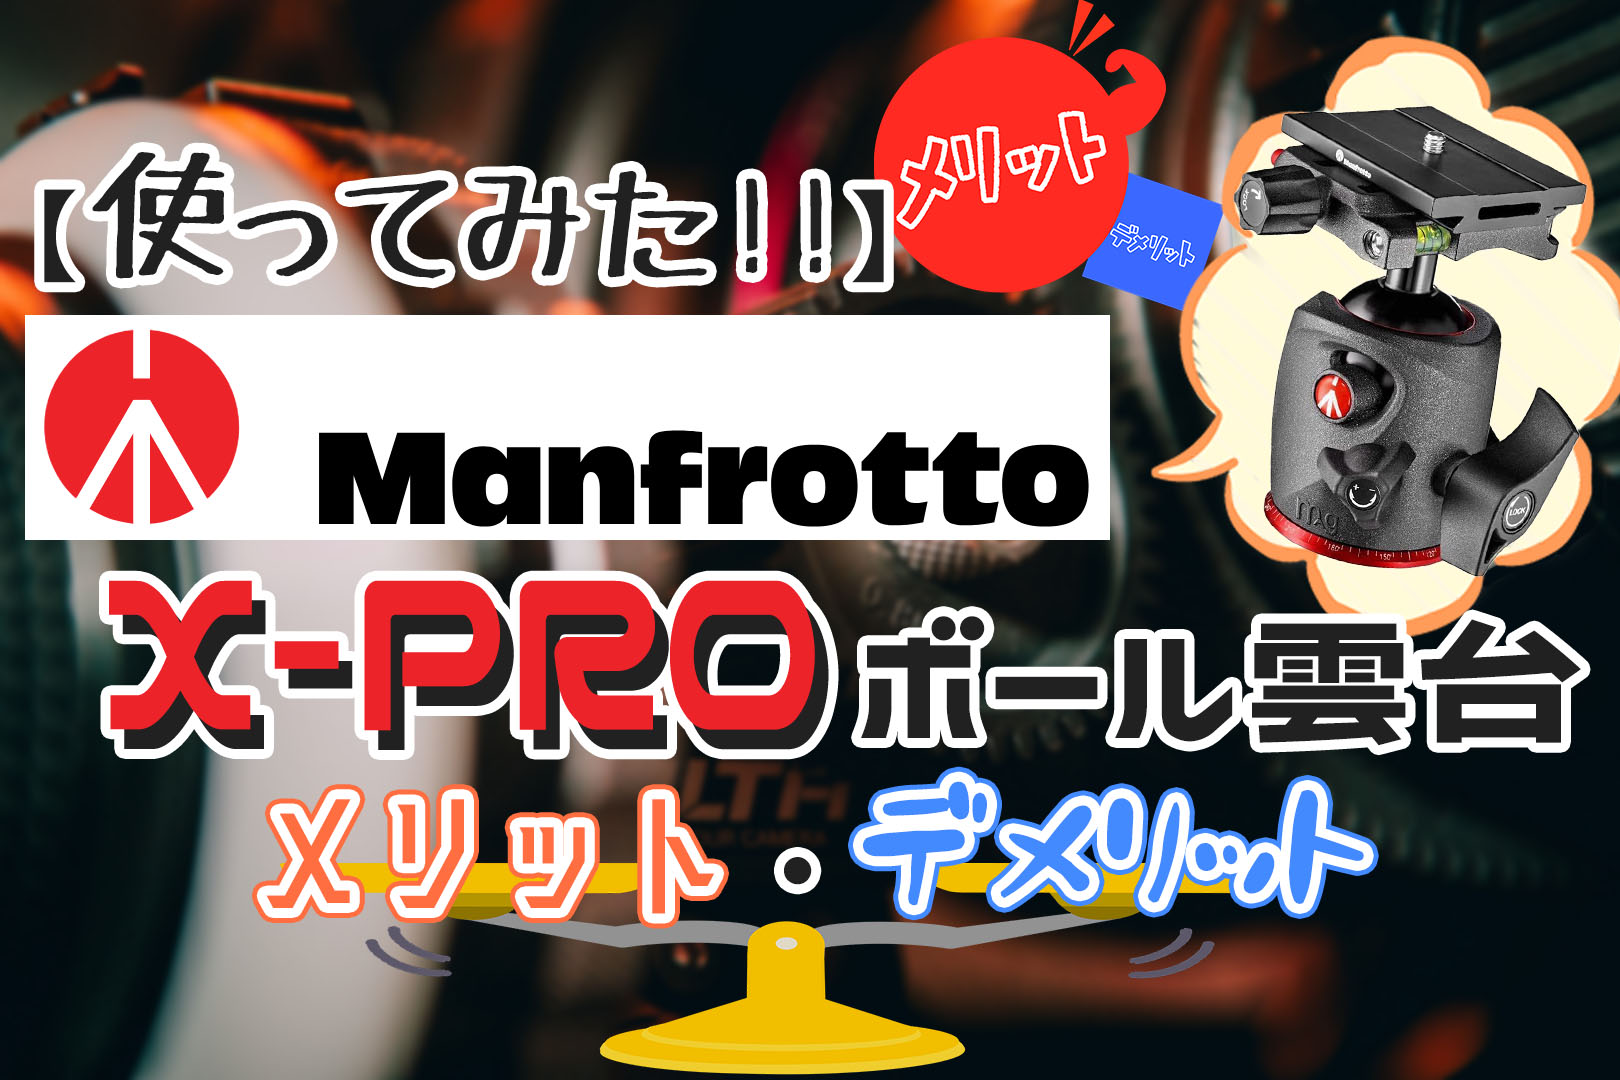 レビュー】Manfrotto X-PROボール雲台のメリット・デメリット【検証